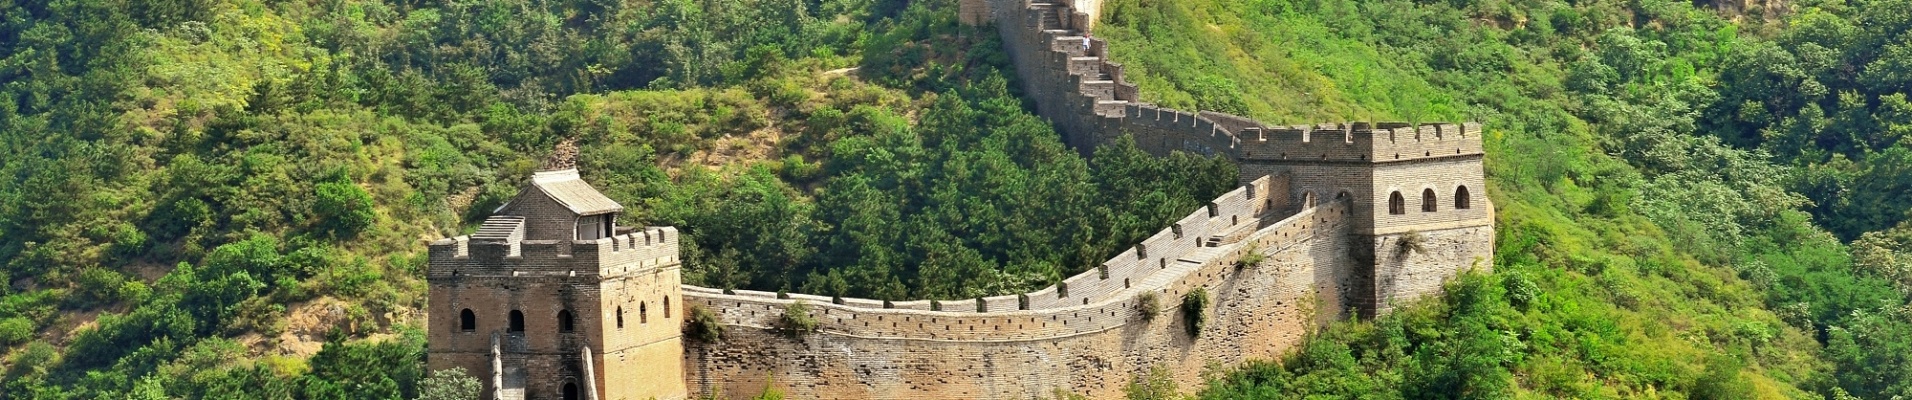 La Grande Muraille de Chine vue du ciel durant l'été